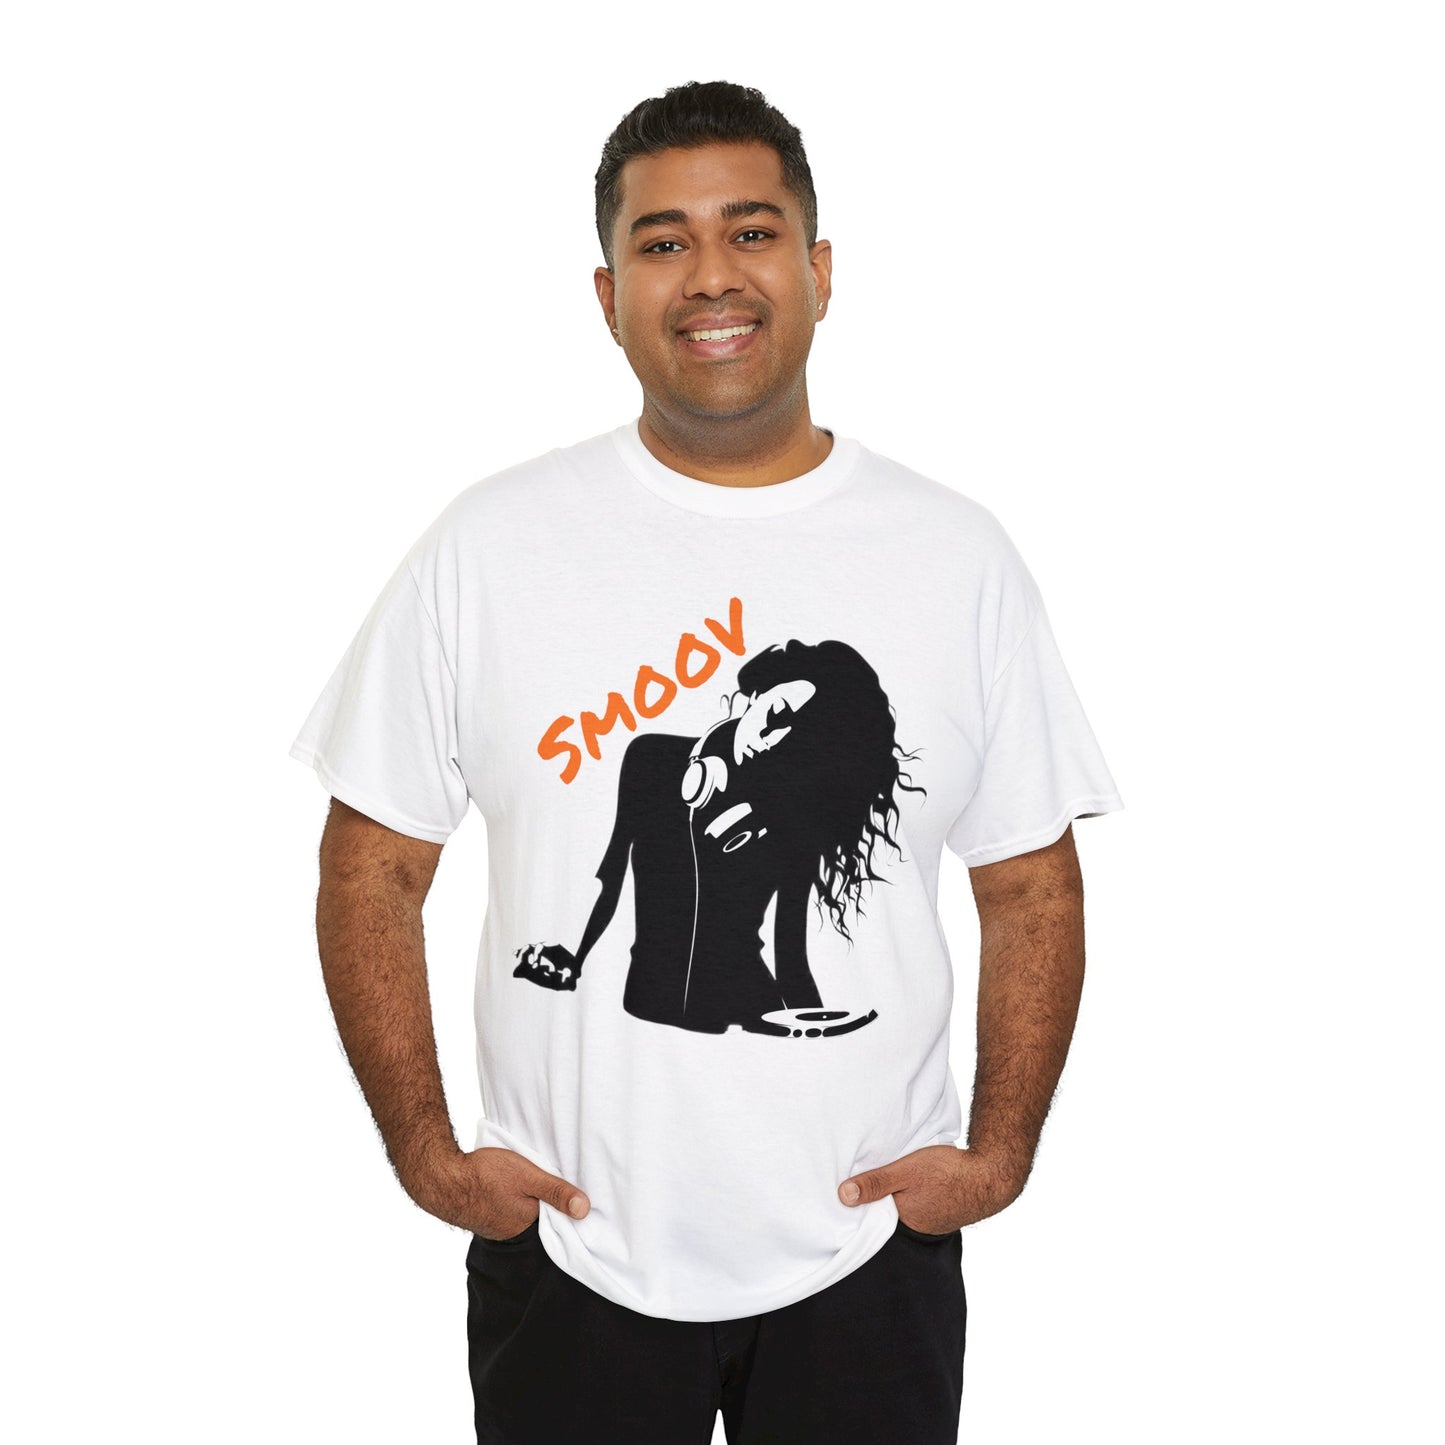 Smoov Groov Black Artist DJ Unisex Heavy Cotton T-Shirt